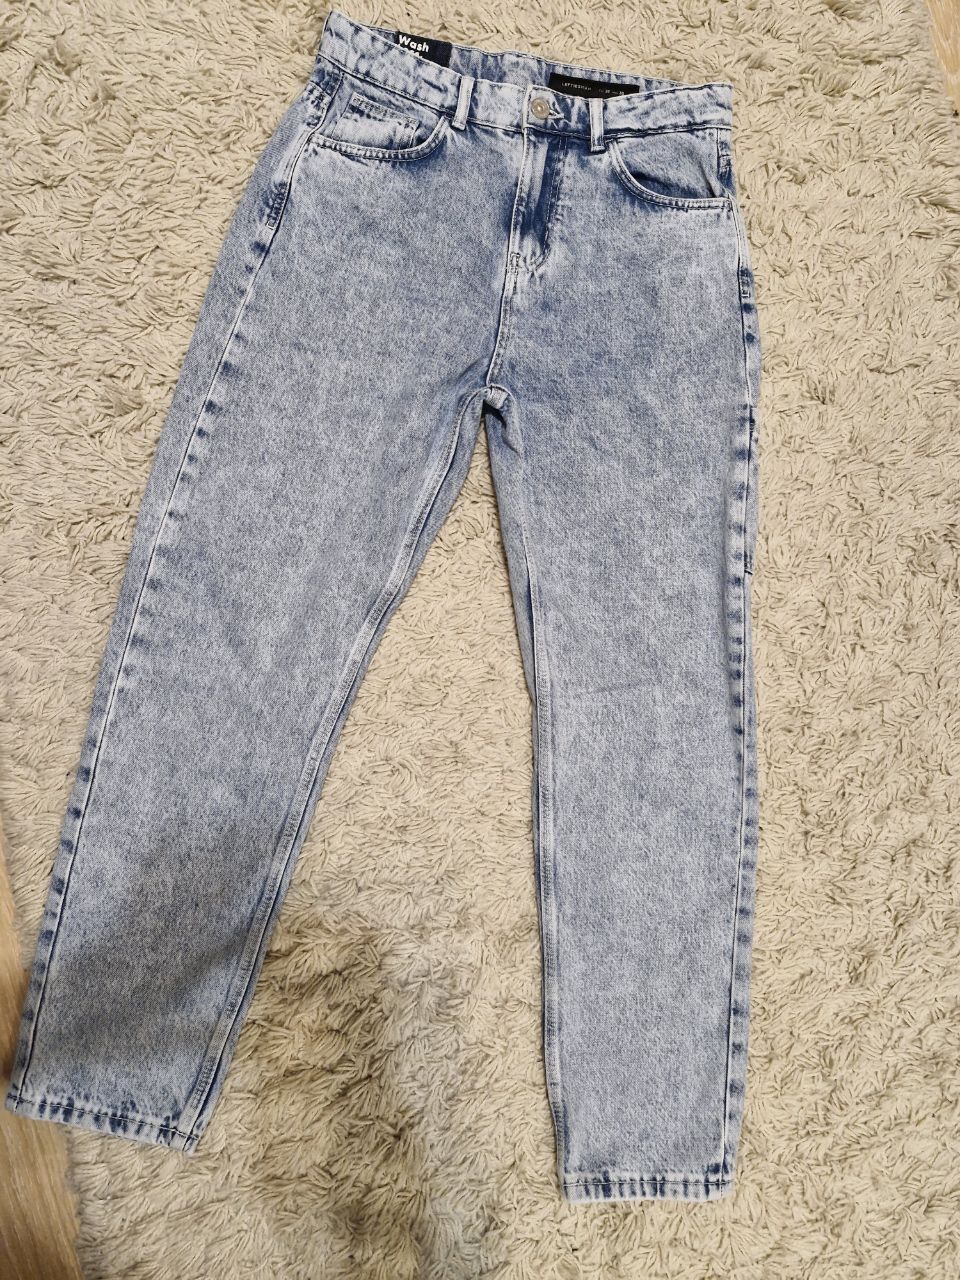 Круті укорочені джинси для хлопця підлітка або стрункого чоловіка